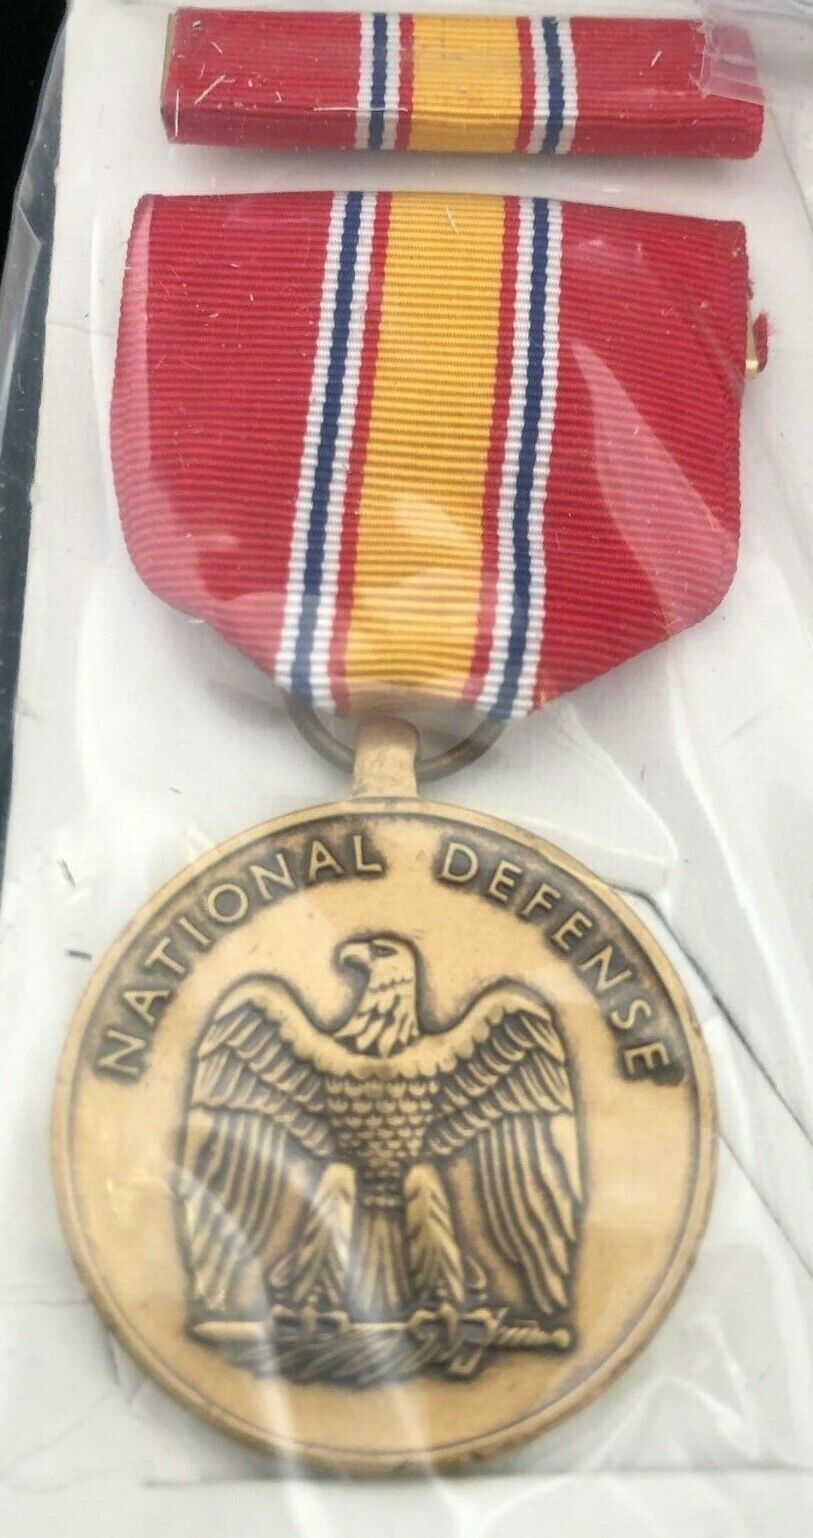  National Defense Medal Set New In Original Box -War Time-MEDAL SALE 